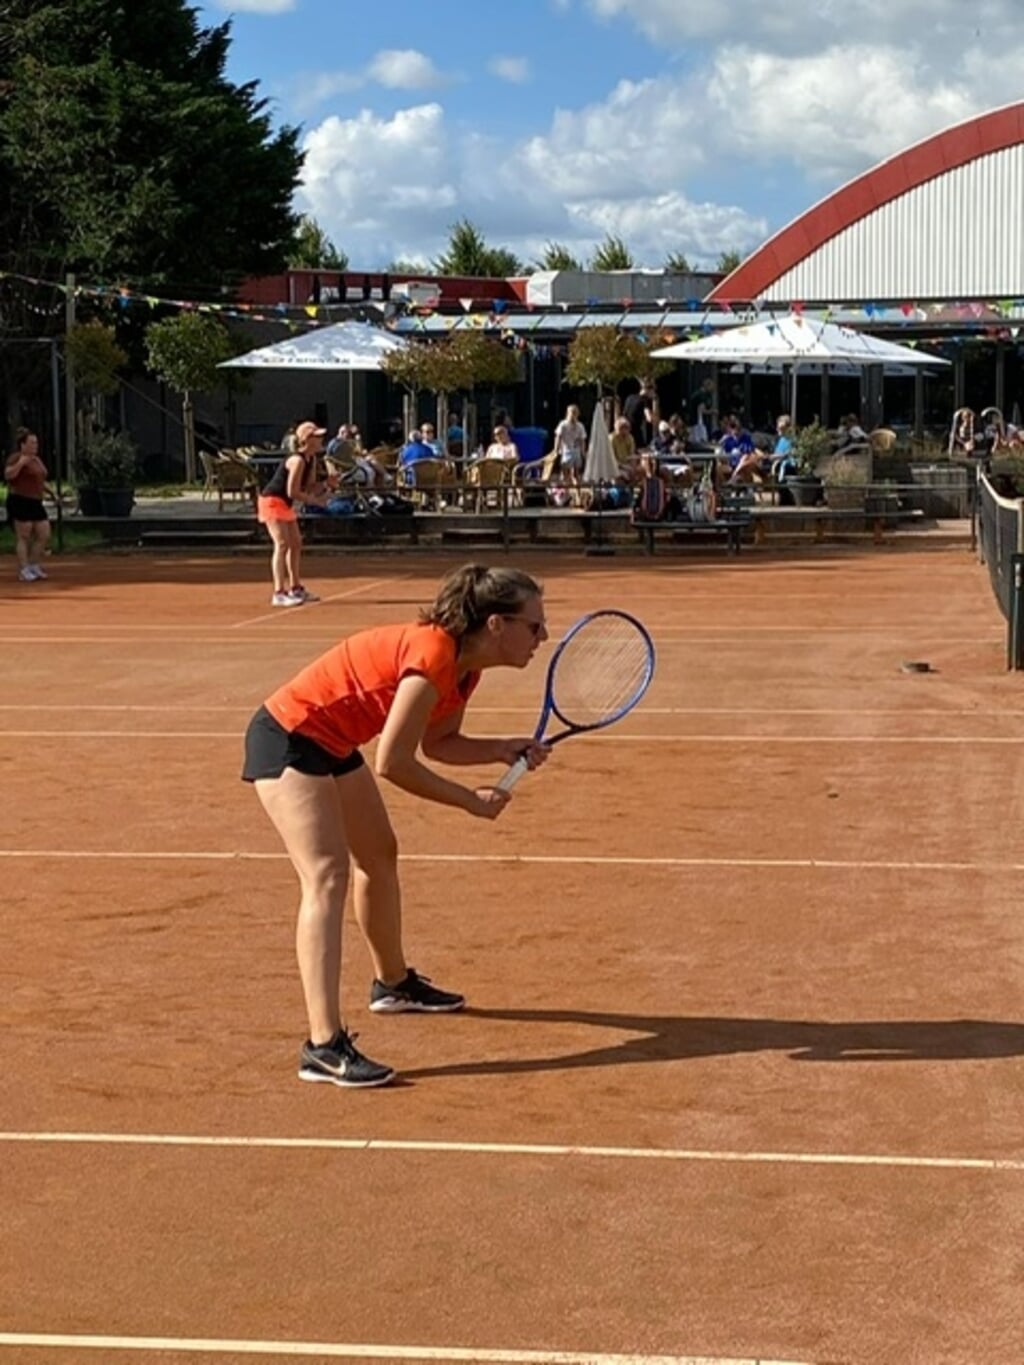 Tennisvereniging Nieuwe Sloot in Alphen houdt dit jaar voor het eerst een open toernooi in maart.